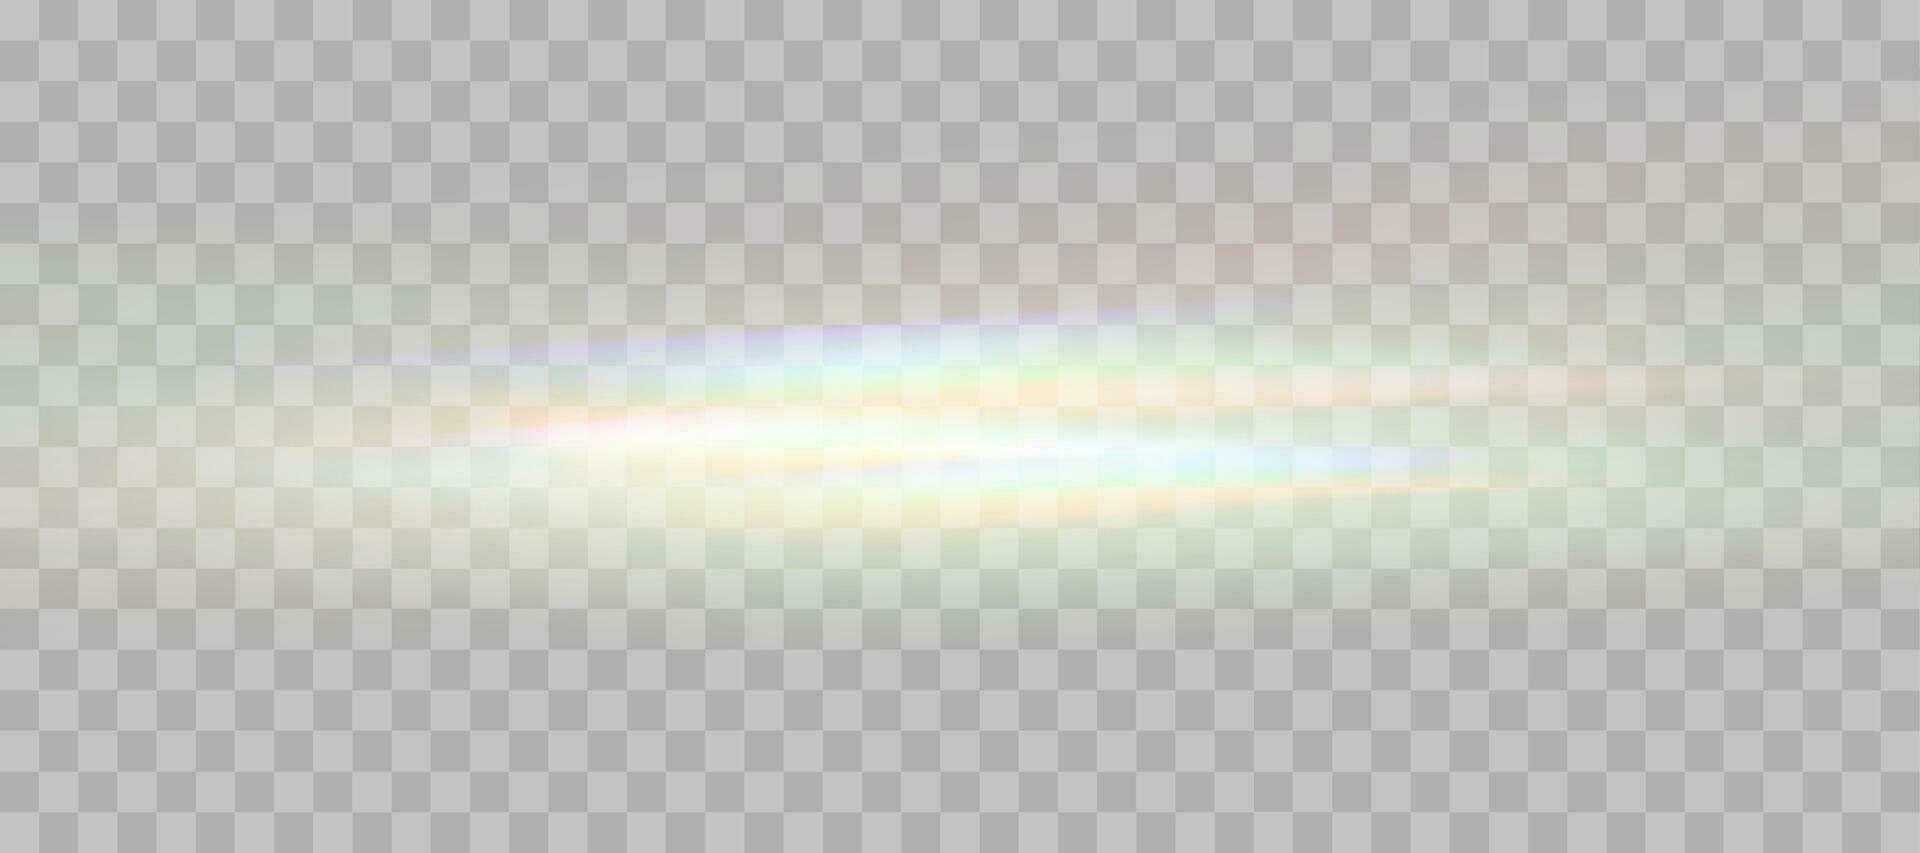 borrado arco Iris refração sobreposição efeito. luz lente prisma efeito. holográfico reflexão, cristal flare vazamento sombra overlay. vetor abstrato ilustração.